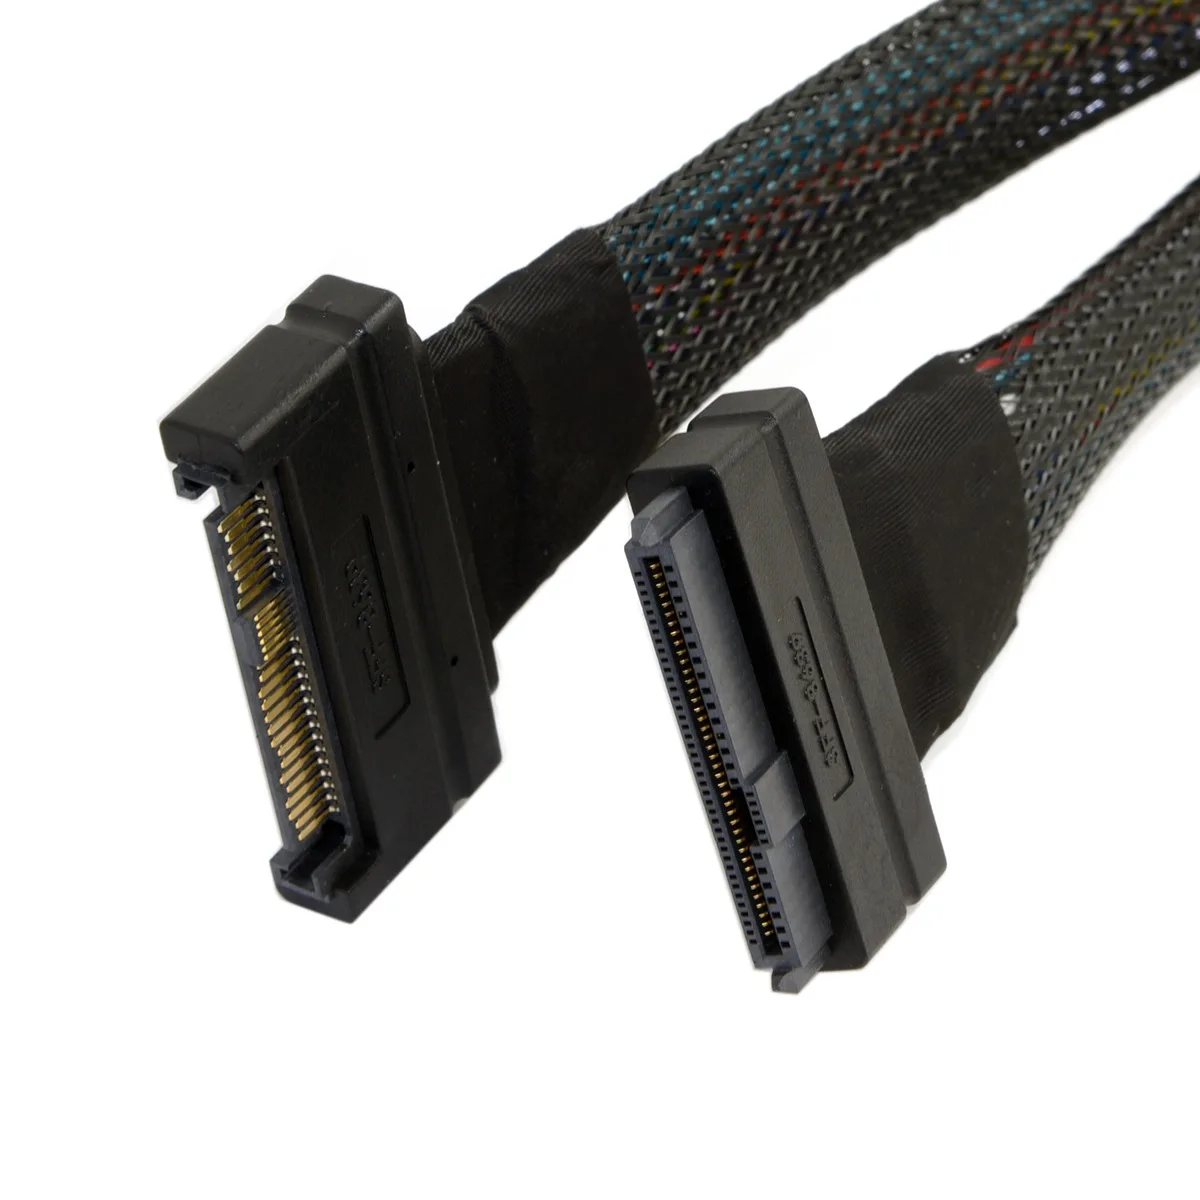 8 Inches Micro SATA Cables SFF-8639 68 Pin U.2 Cable Female to Female 